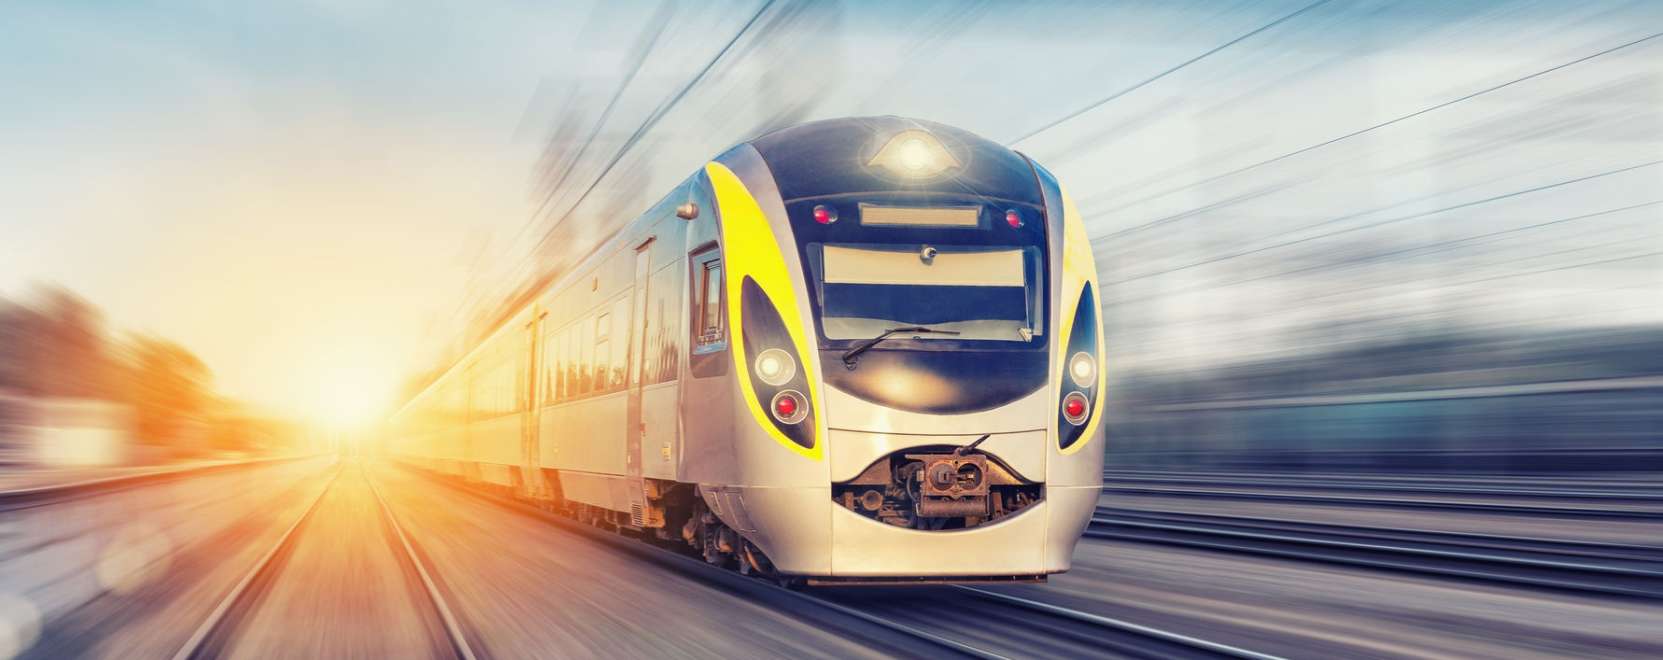 IoT-szenzorok teszik biztonságosabbá a holland vasutat